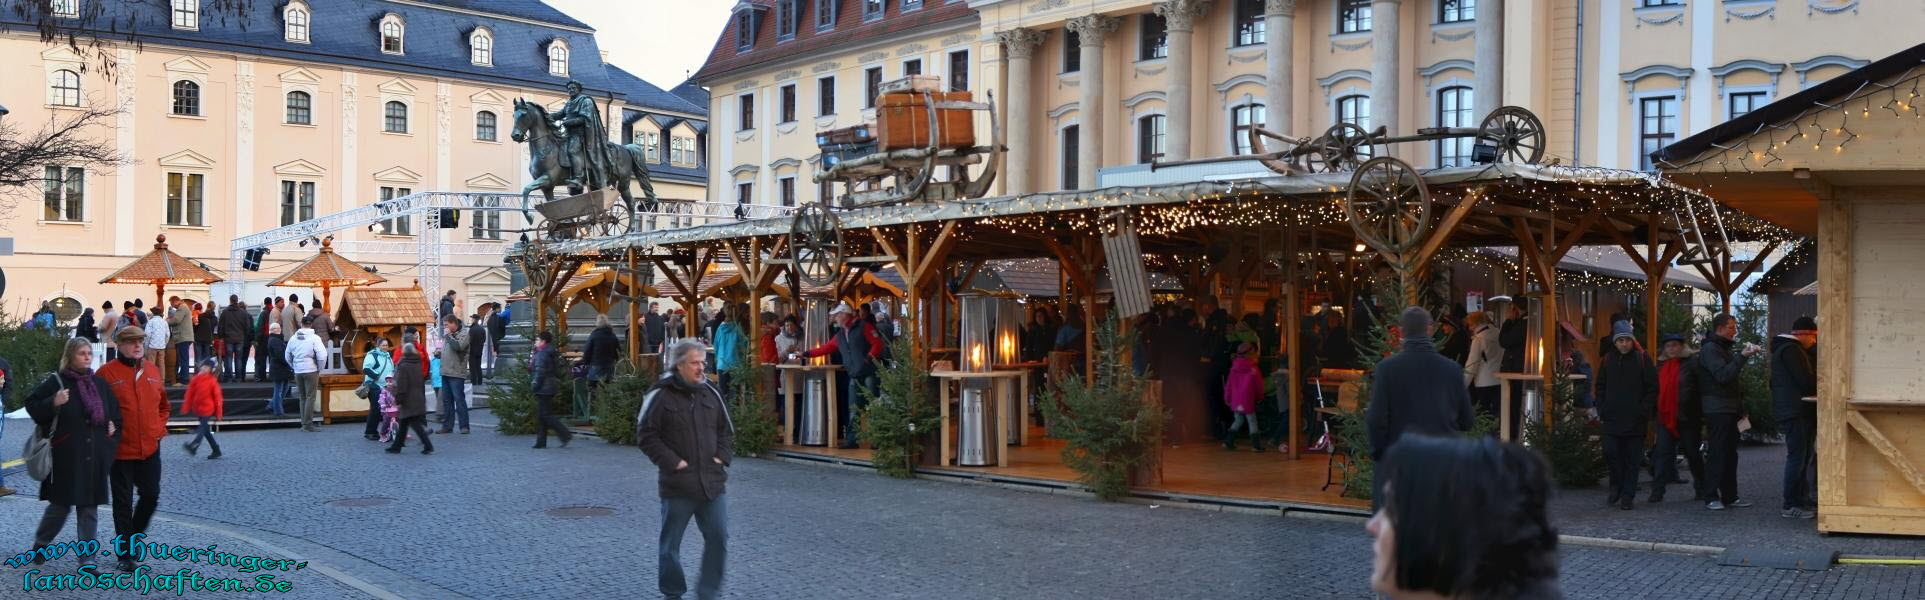 Weihnachtsmarkt Weimar